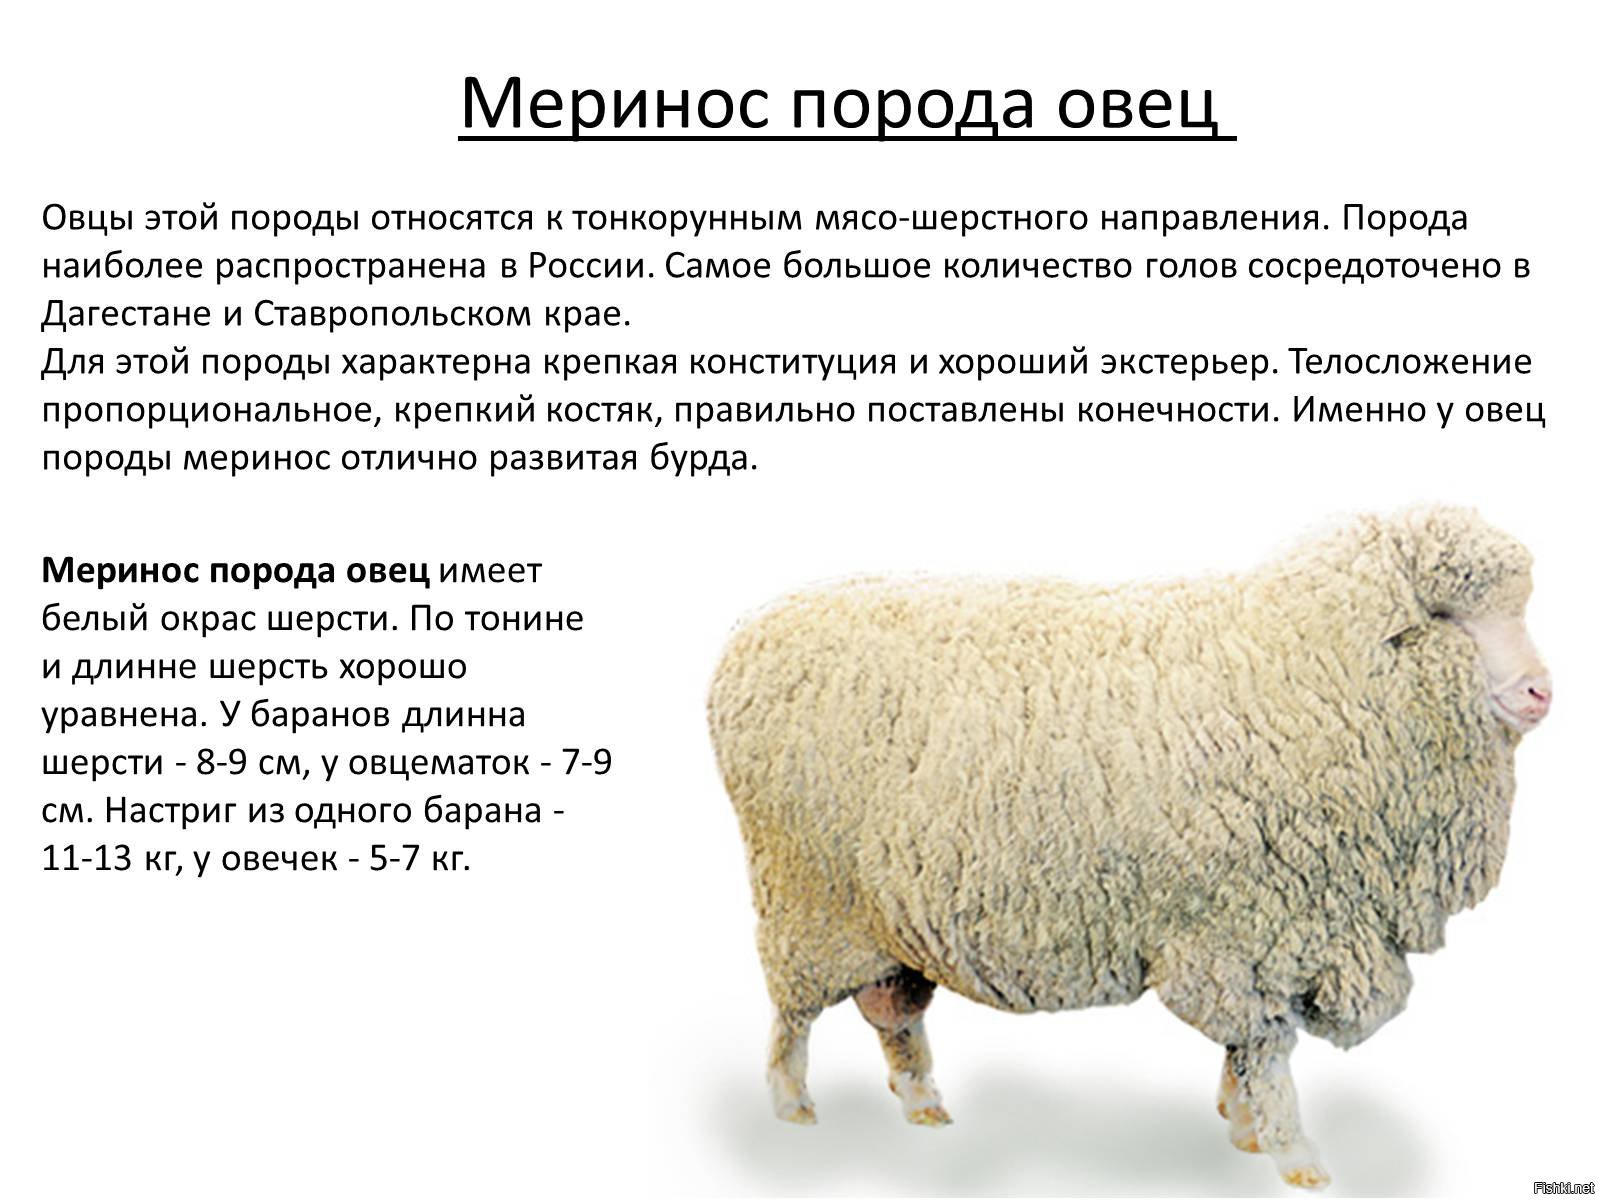 Где Купить Можно Овец В Новосибирске